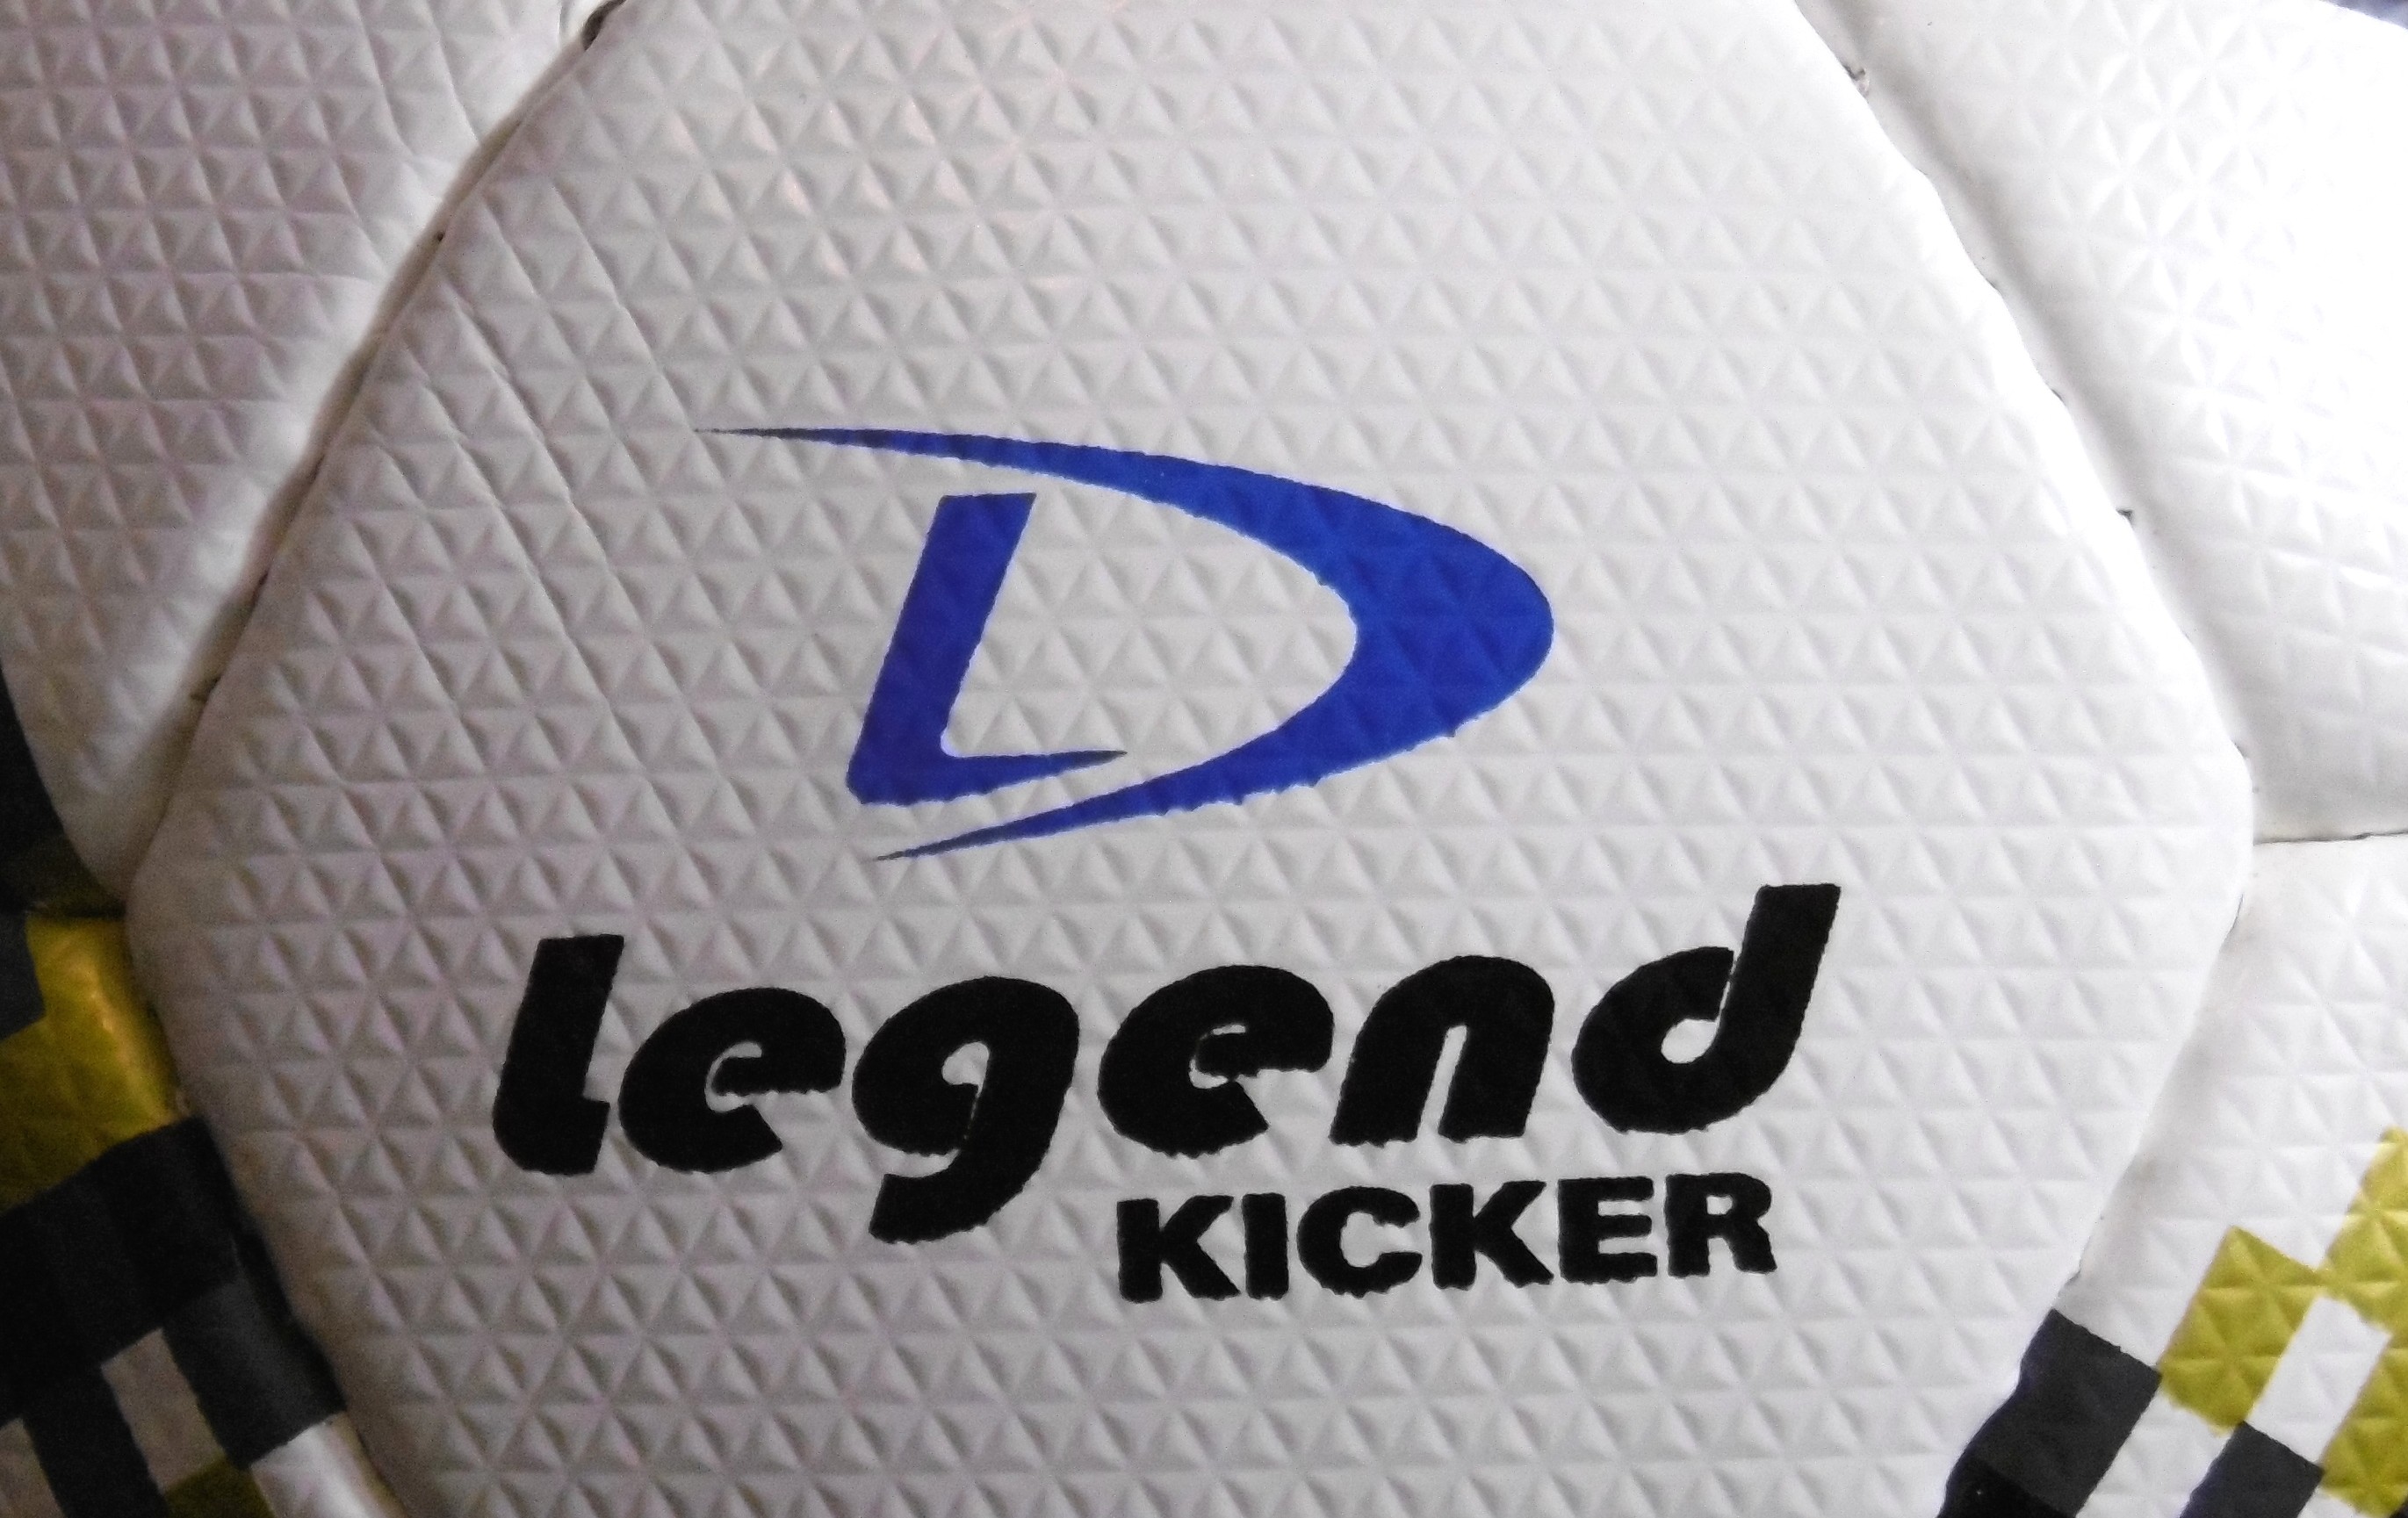 Zdjęcie Piłka do gry w piłkę nożną KICKER TOP MATCH 5 Legend